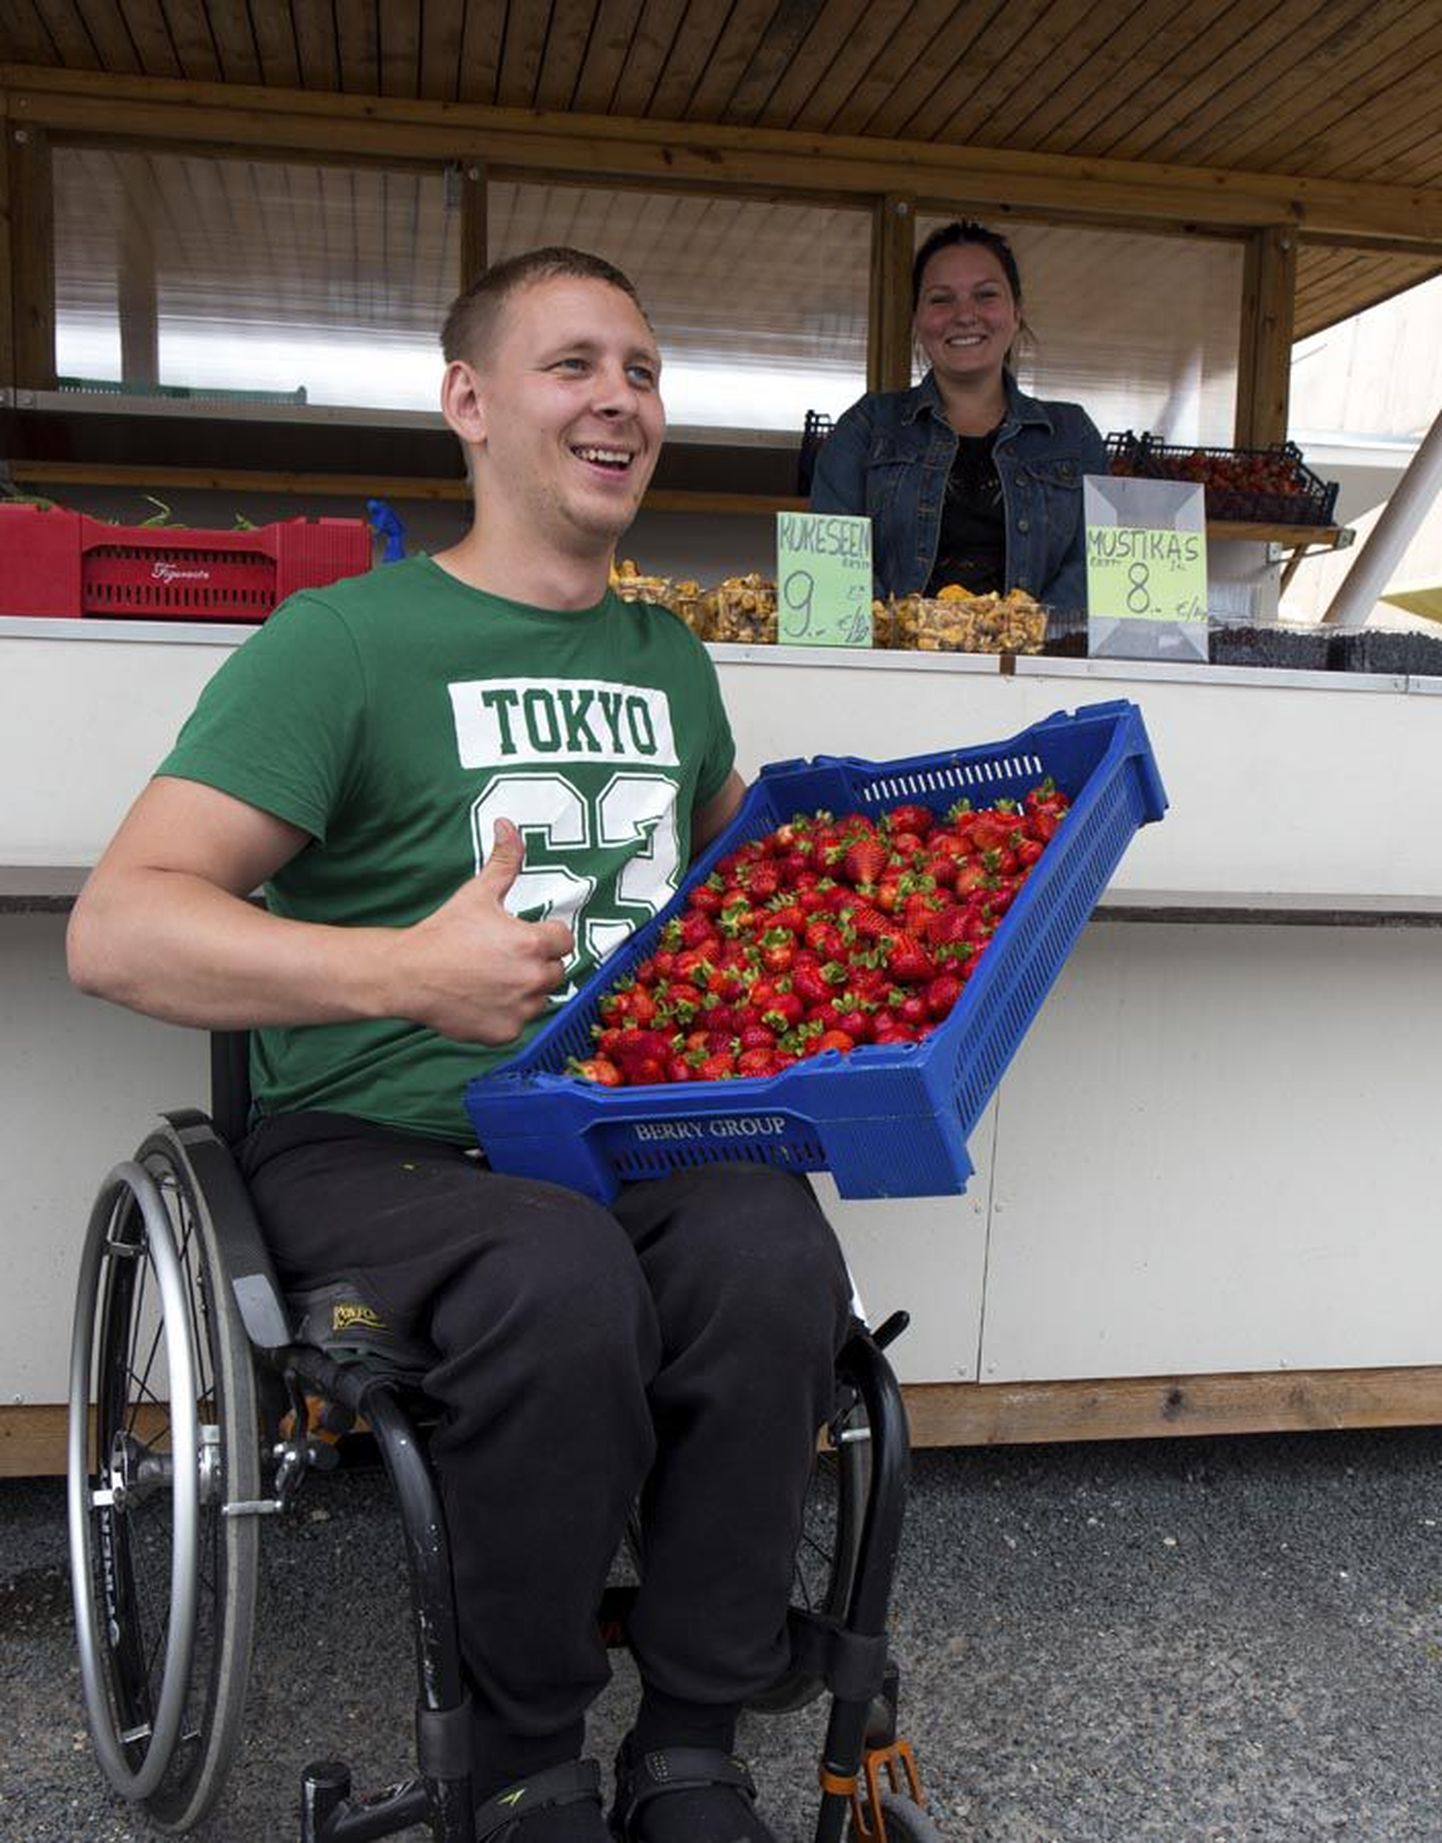 Ratastoolis ettevõtja Siim Küti sõnutsi on Eesti kasvatajatel noortelt põldudelt alles juuli lõpus hakanud maasikaid tulema ja neid jagub loodetavasti veel kuuks ajaks.